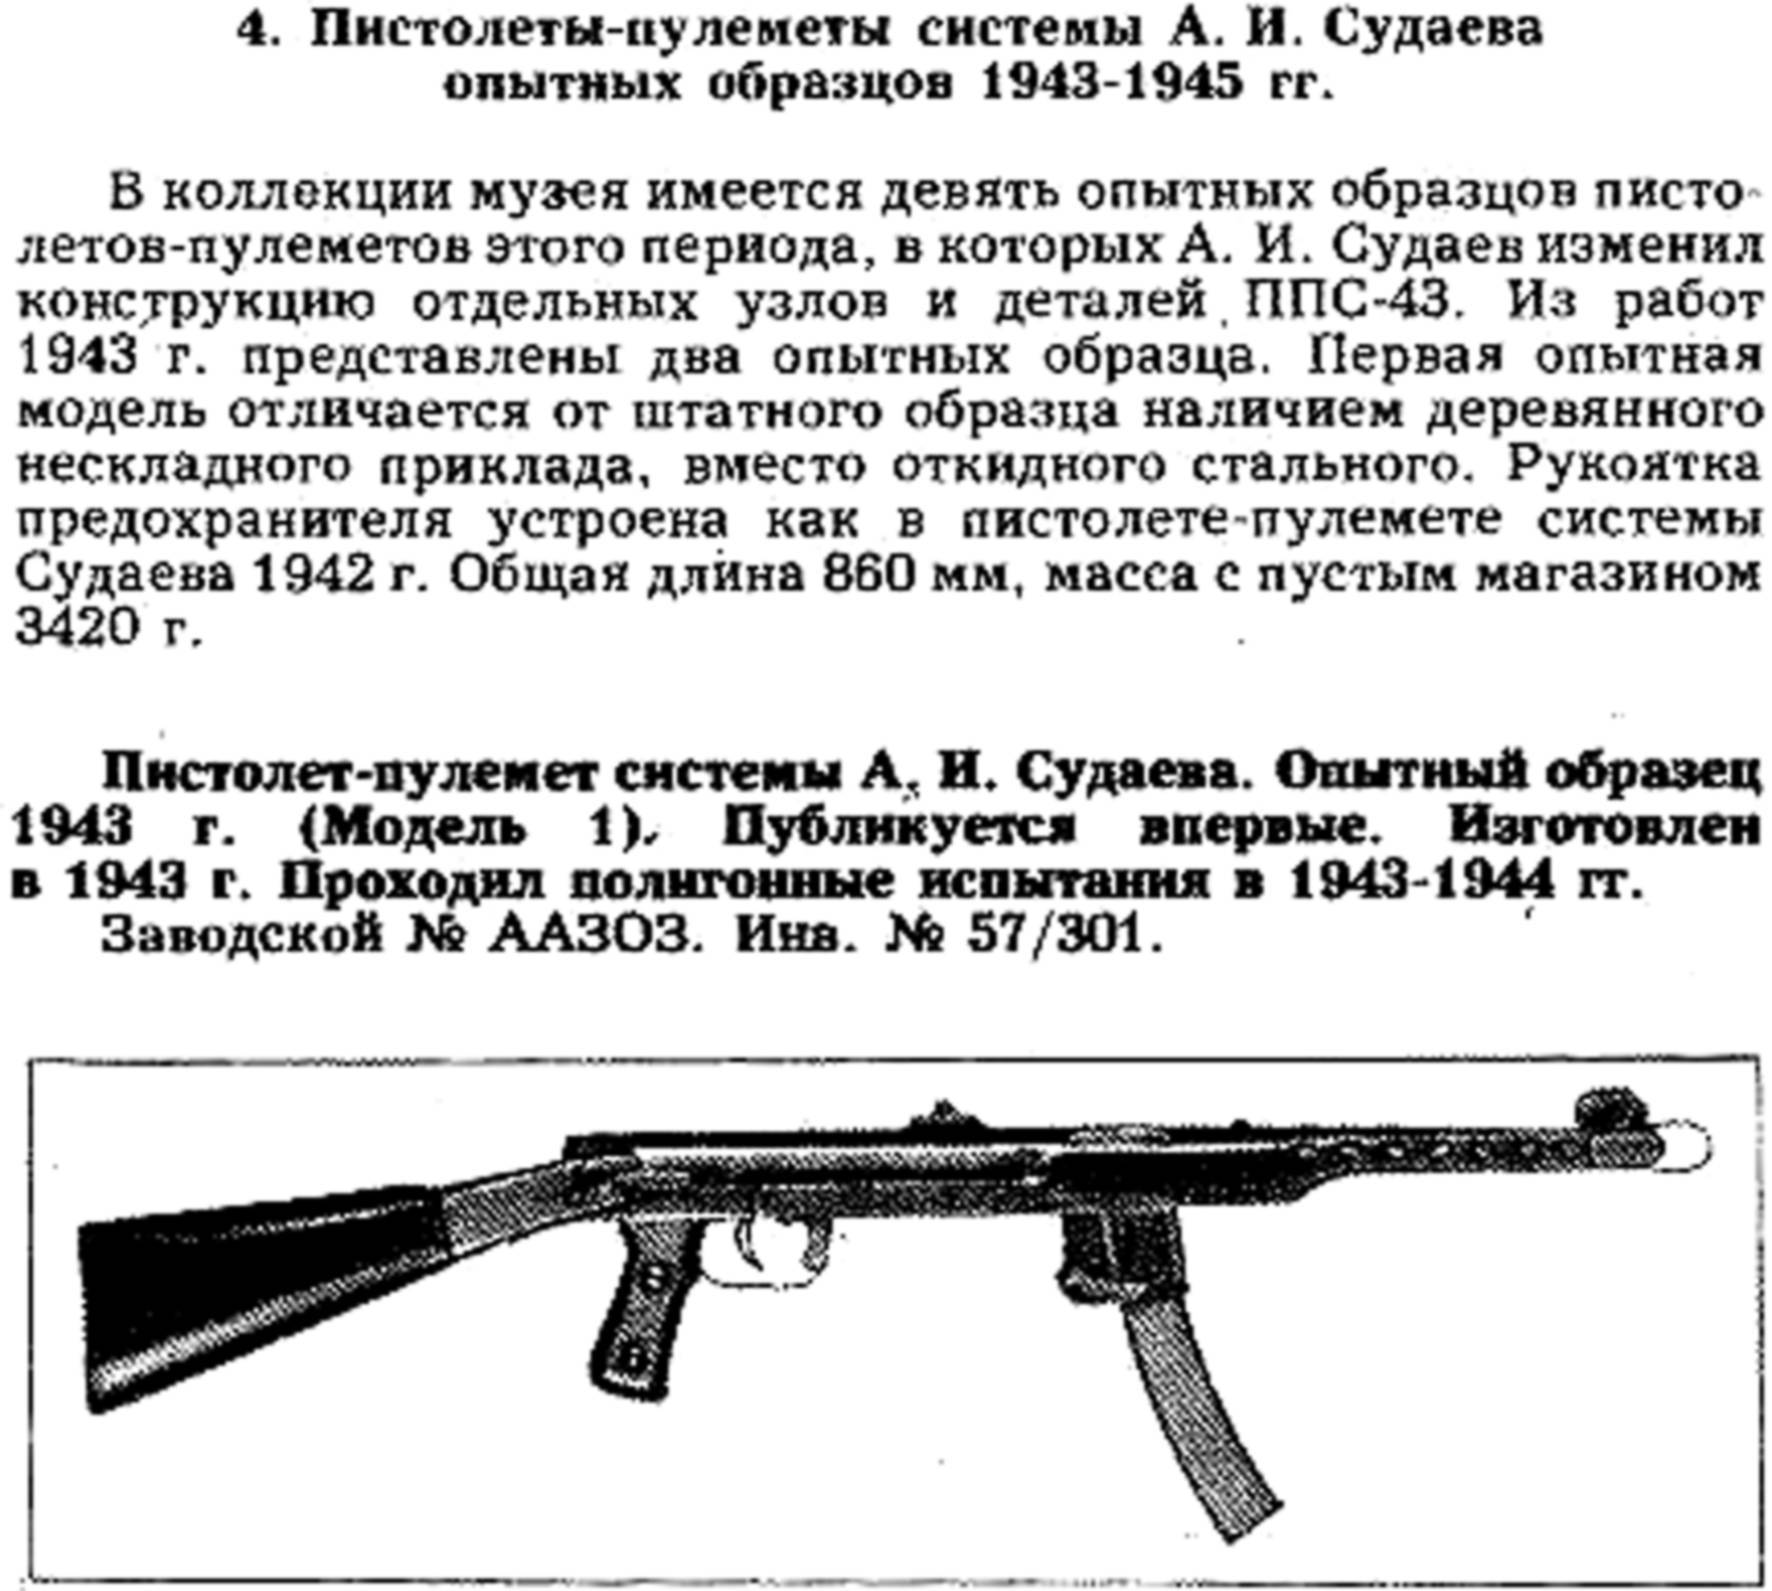 Пистолет-пулемёт судаева: легендарное оружие, созданное в блокадном ленинграде